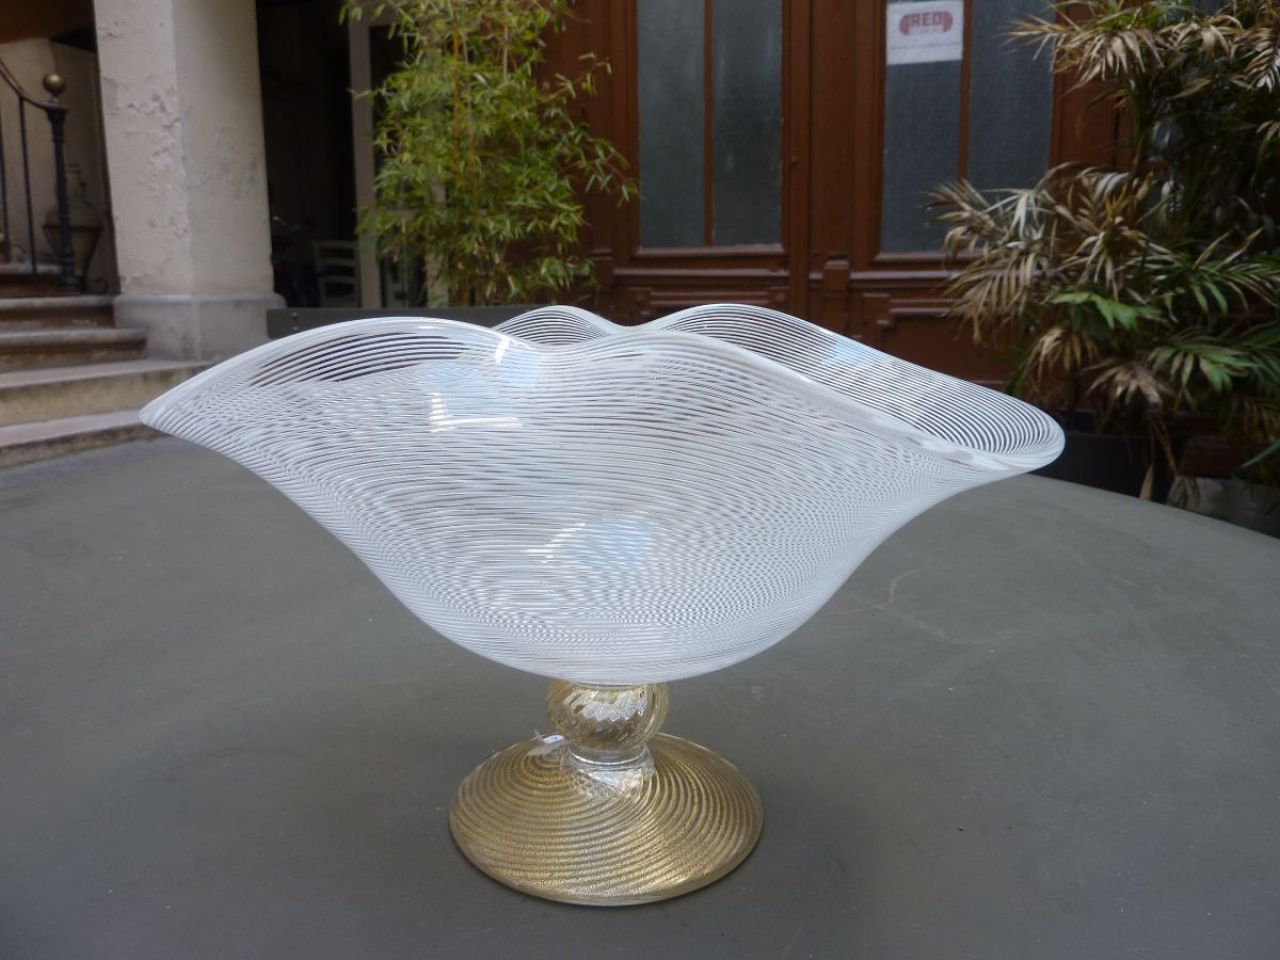 Magnifique coupe en verre filigrana, base en cristal avec feuille d'or, réalisé par le maitre verrier Giuliano Ballarin 